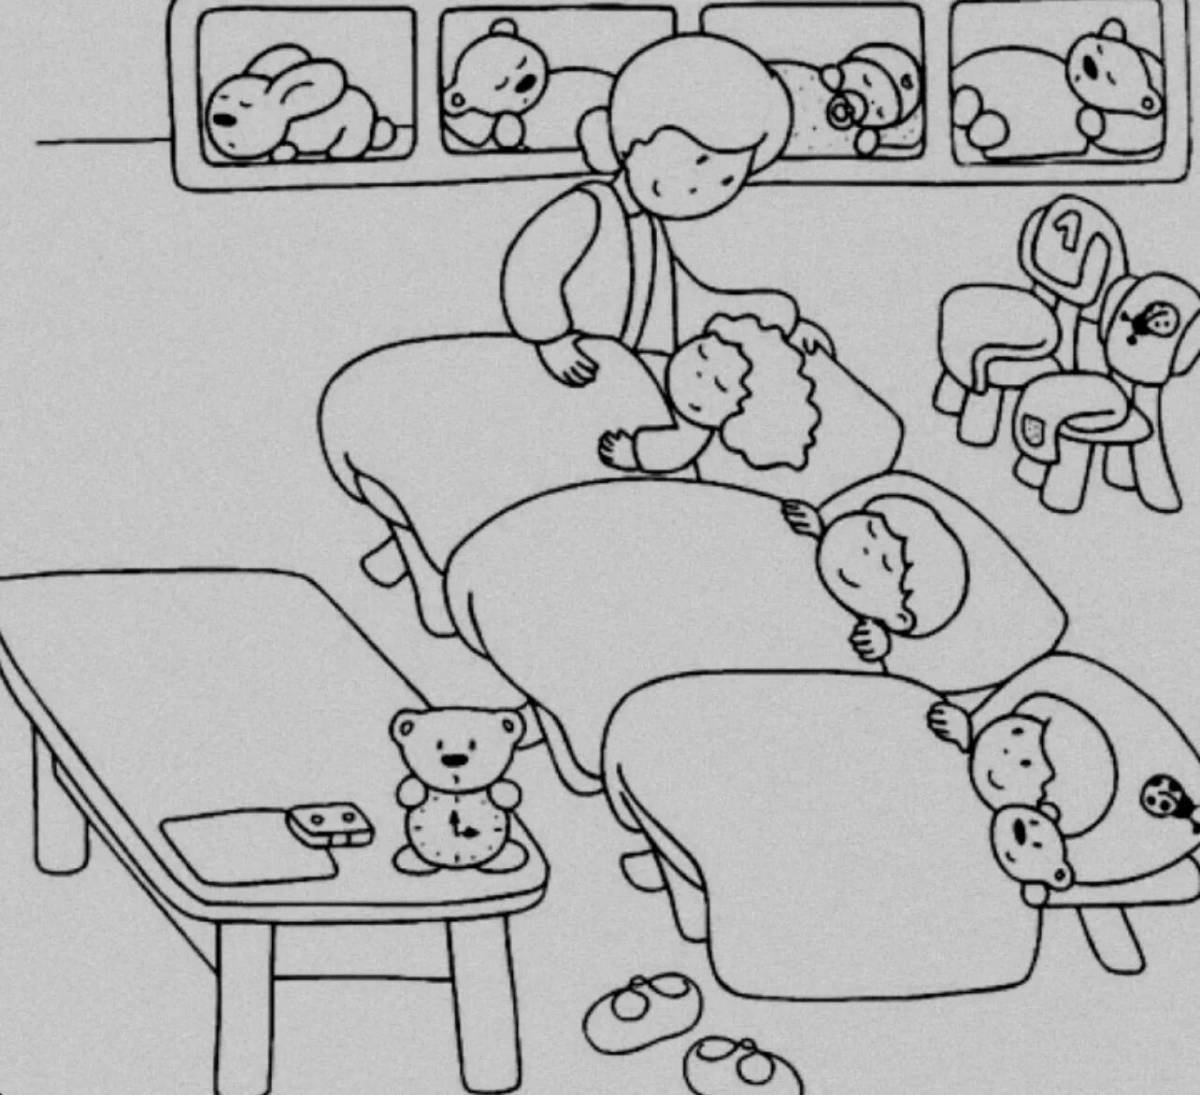 Animated coloring book children in kindergarten